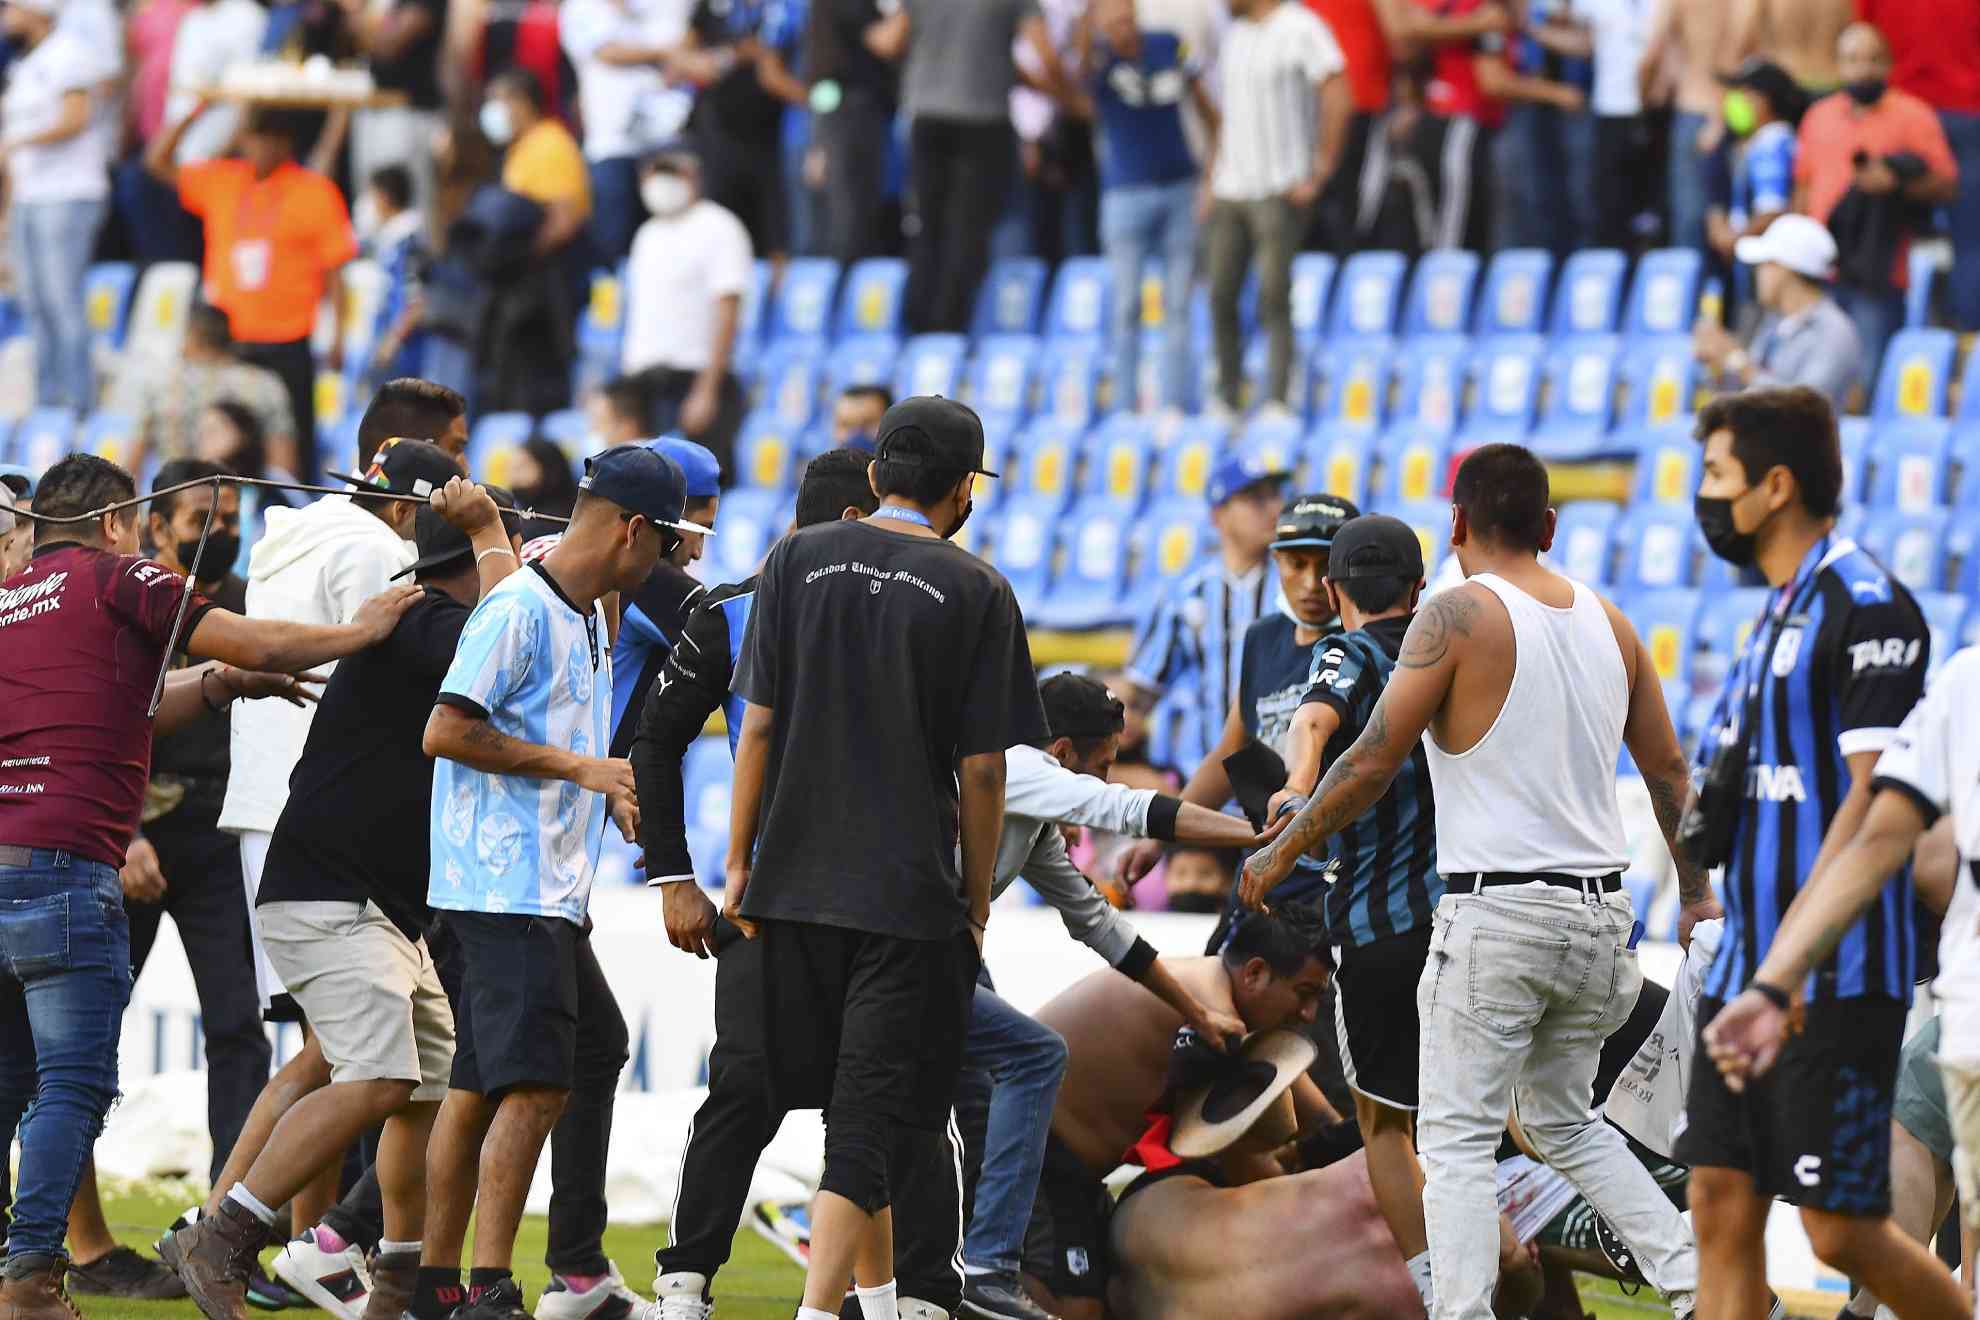 Imágenes de los hechos violentos en el Estadio Corregidora.